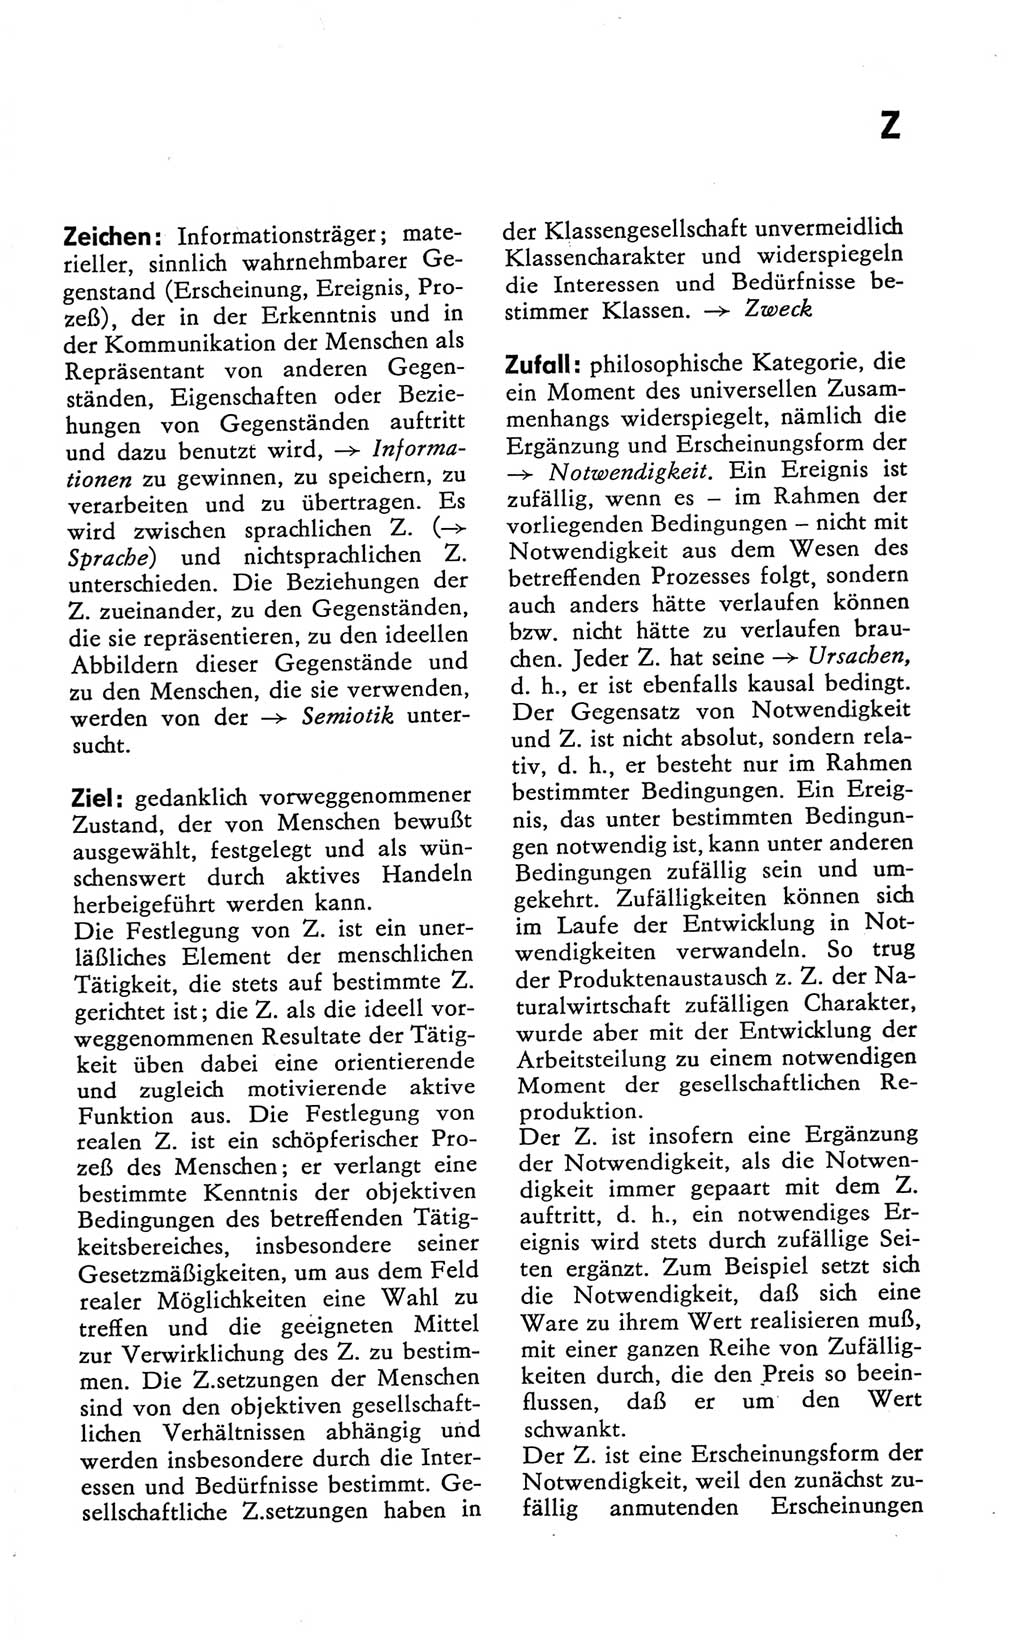 Kleines Wörterbuch der marxistisch-leninistischen Philosophie [Deutsche Demokratische Republik (DDR)] 1981, Seite 359 (Kl. Wb. ML Phil. DDR 1981, S. 359)